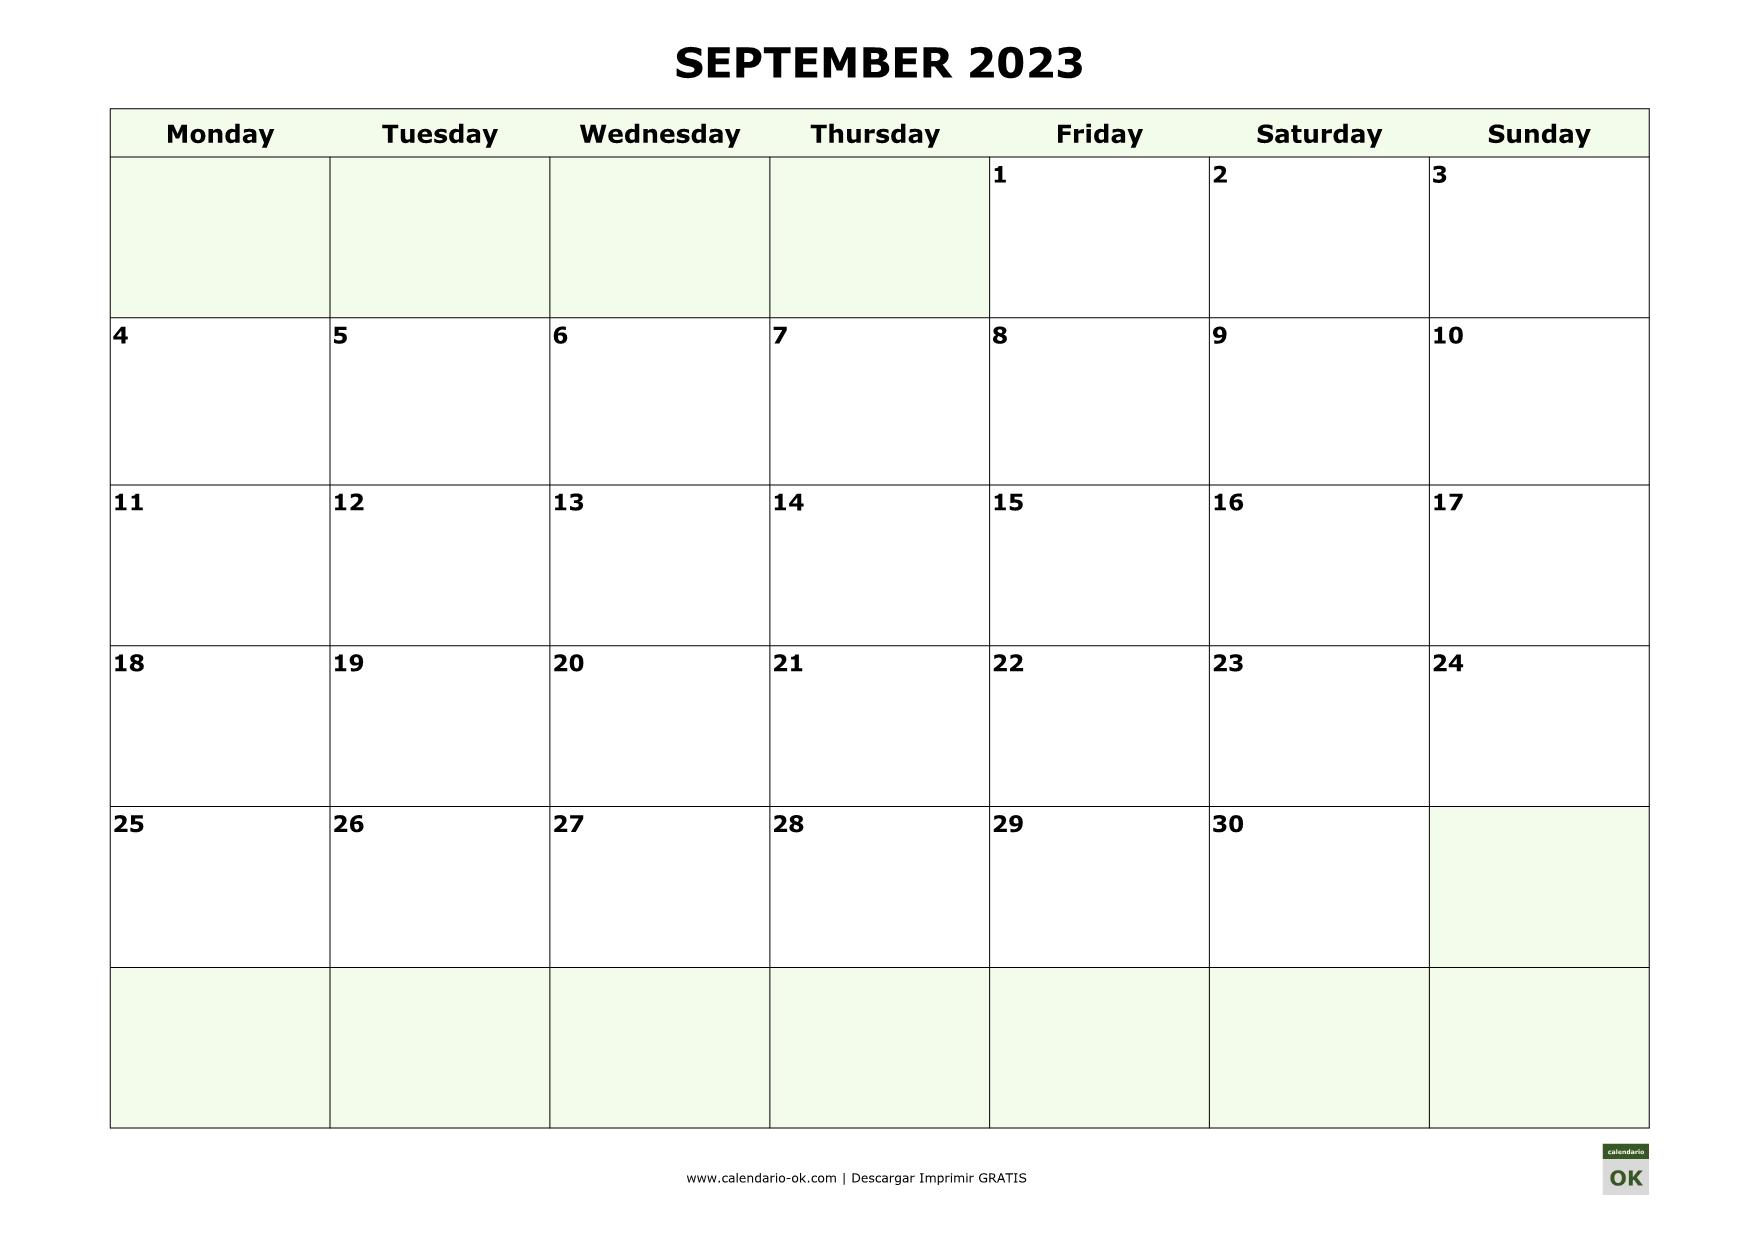 SEPTIEMBRE 2023 calendario en INGLES